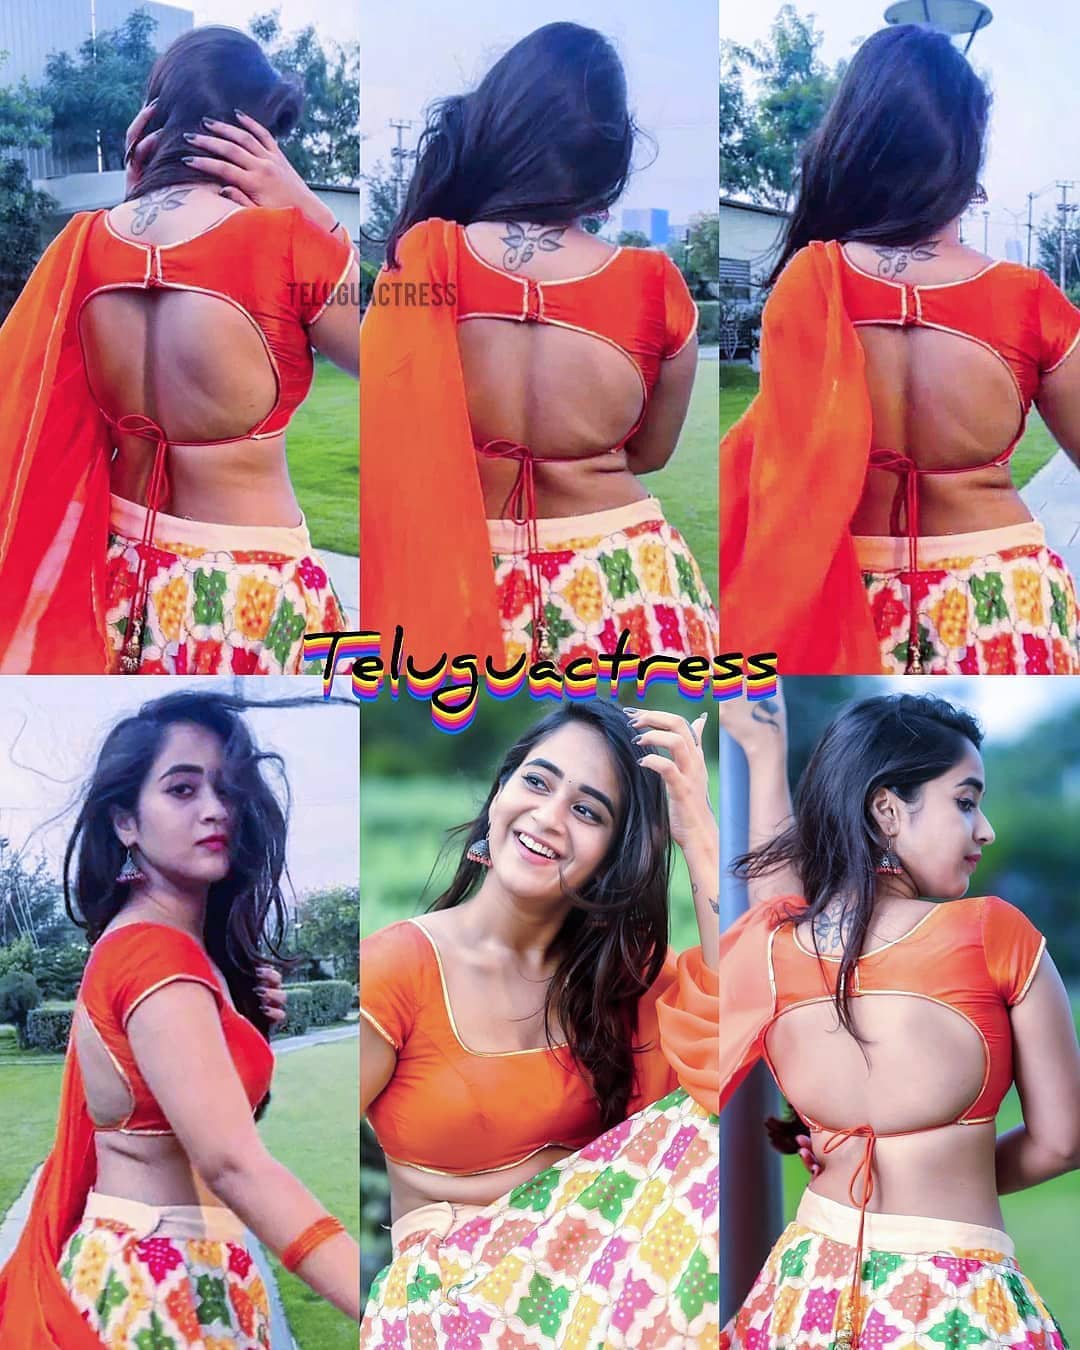 బగబస బయట దపత సనన మడప ఉనన టట ఫటల సషల మడయల వరల   bigg boss beauty deepthi sunaina neck tattoo photos are viral on social  media News18 Telugu